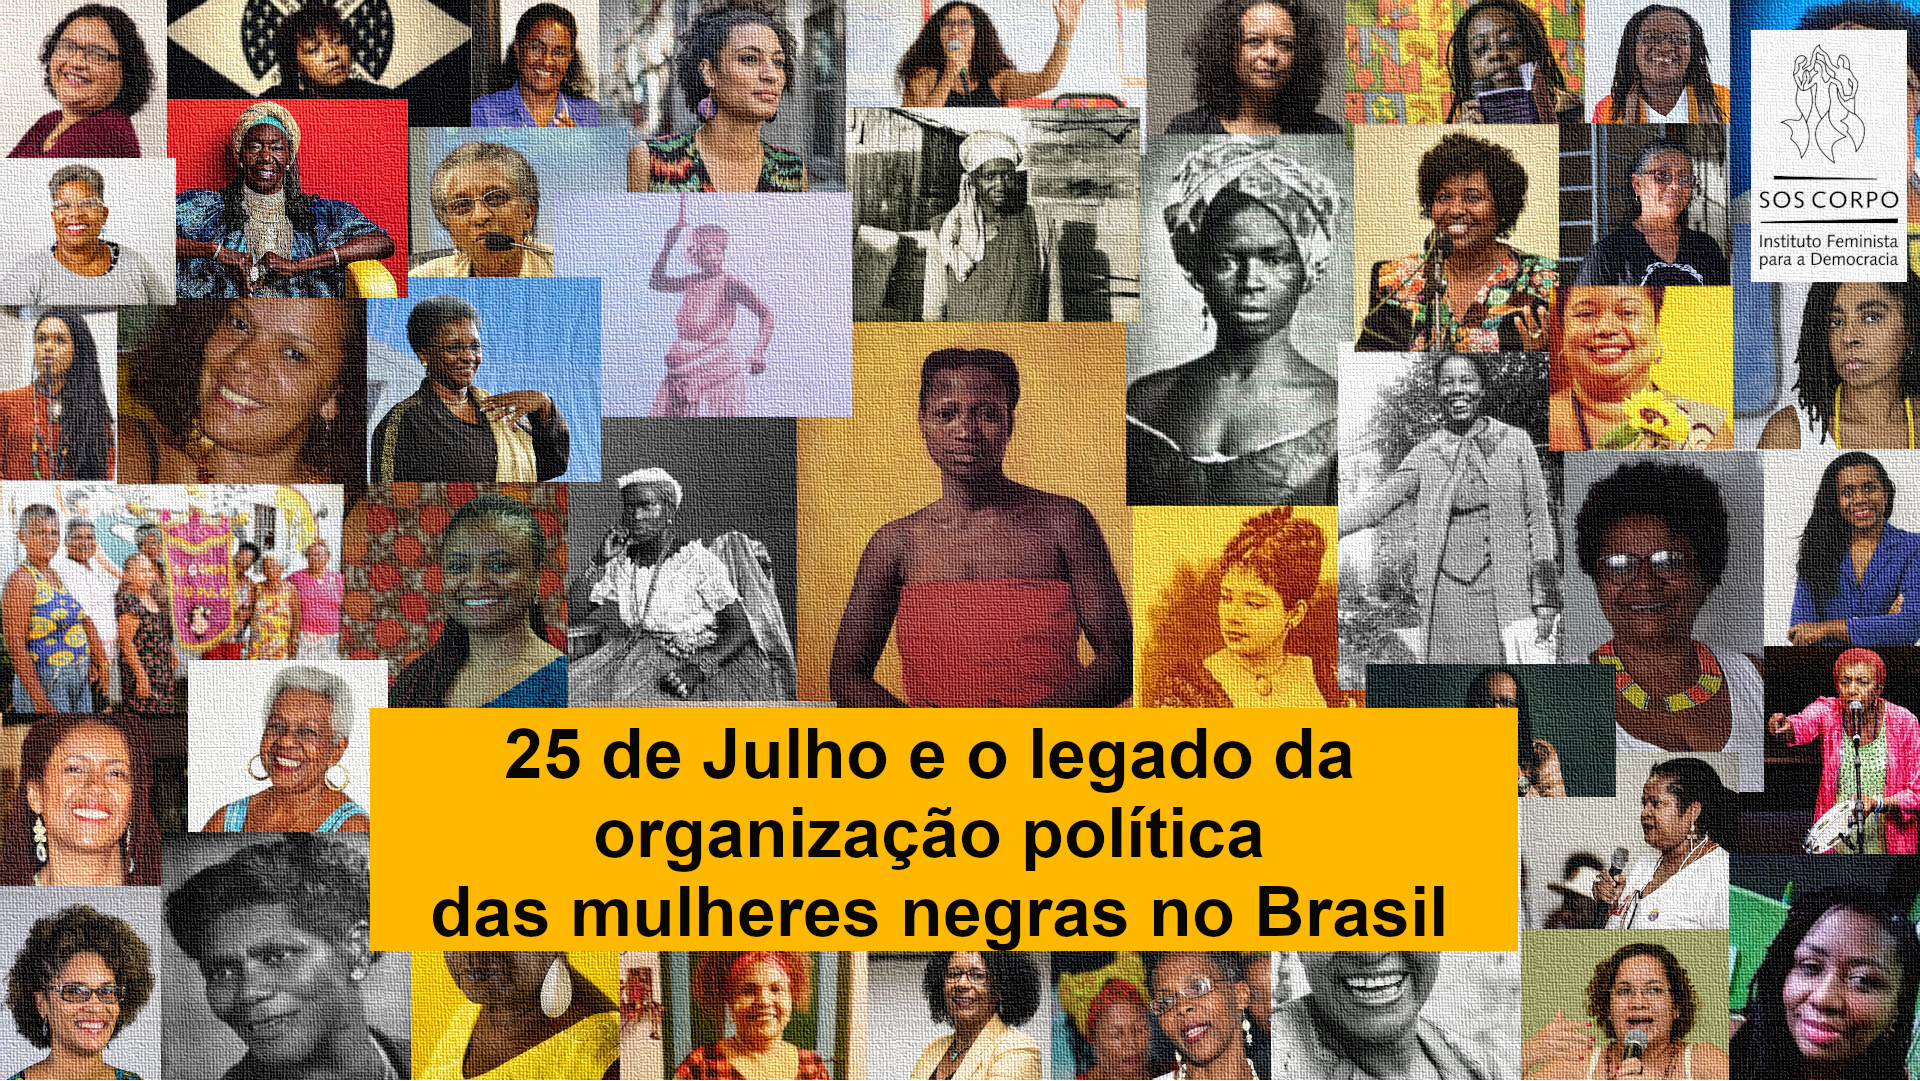 25 de Julho e o legado da organização política das mulheres negras no Brasil